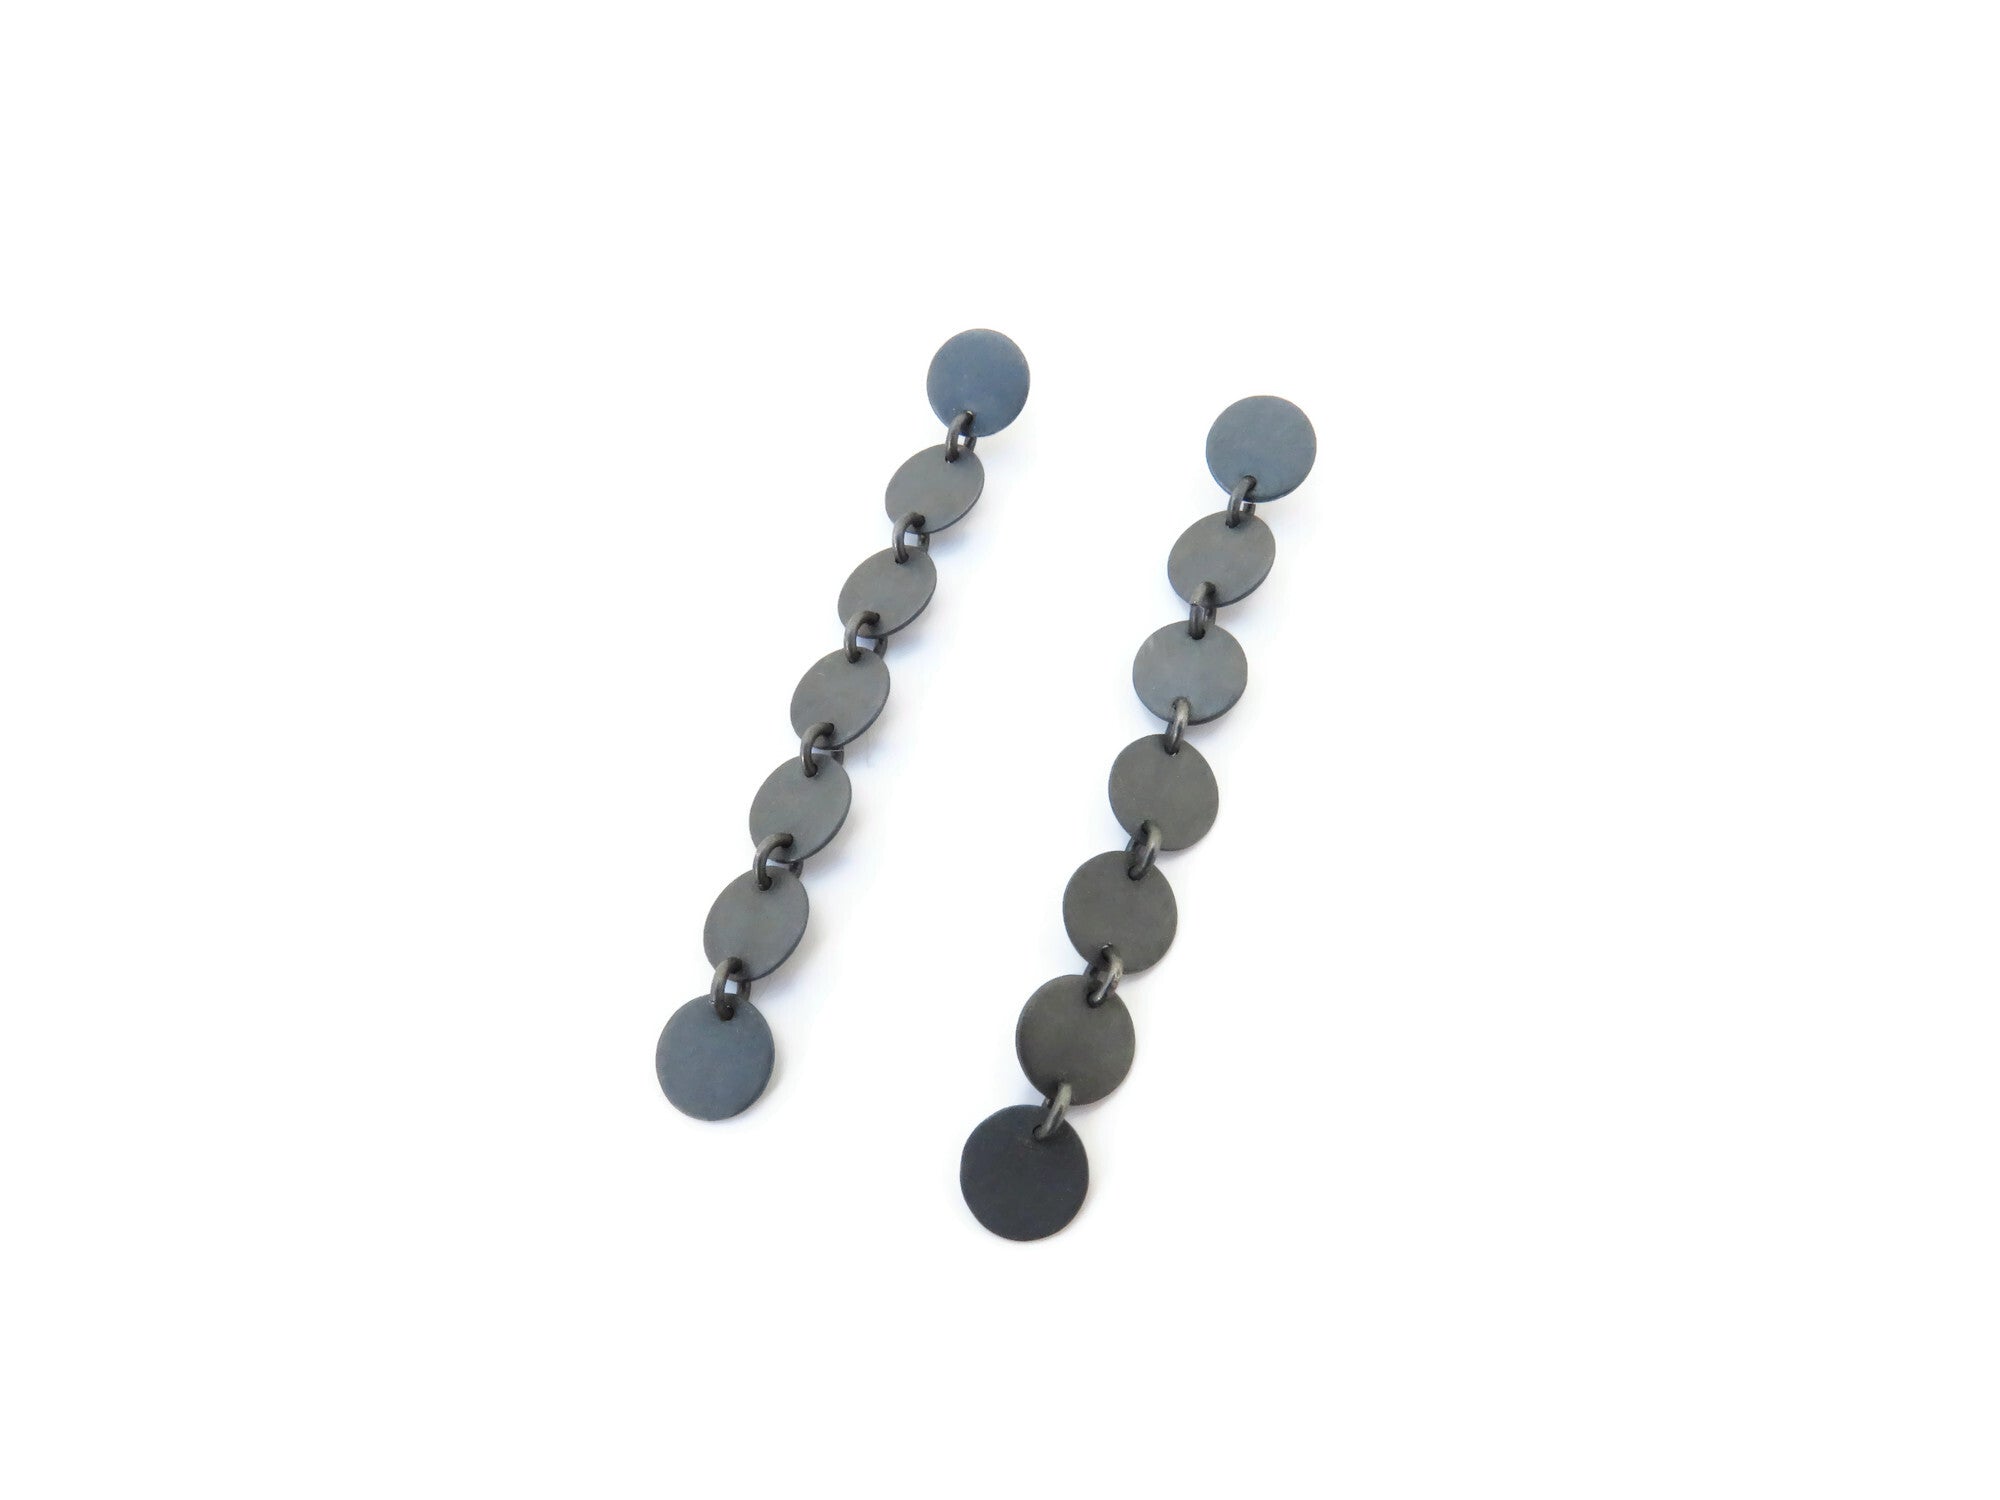 Long Hanging Earrings in Oxidized Silver | KimyaJoyas